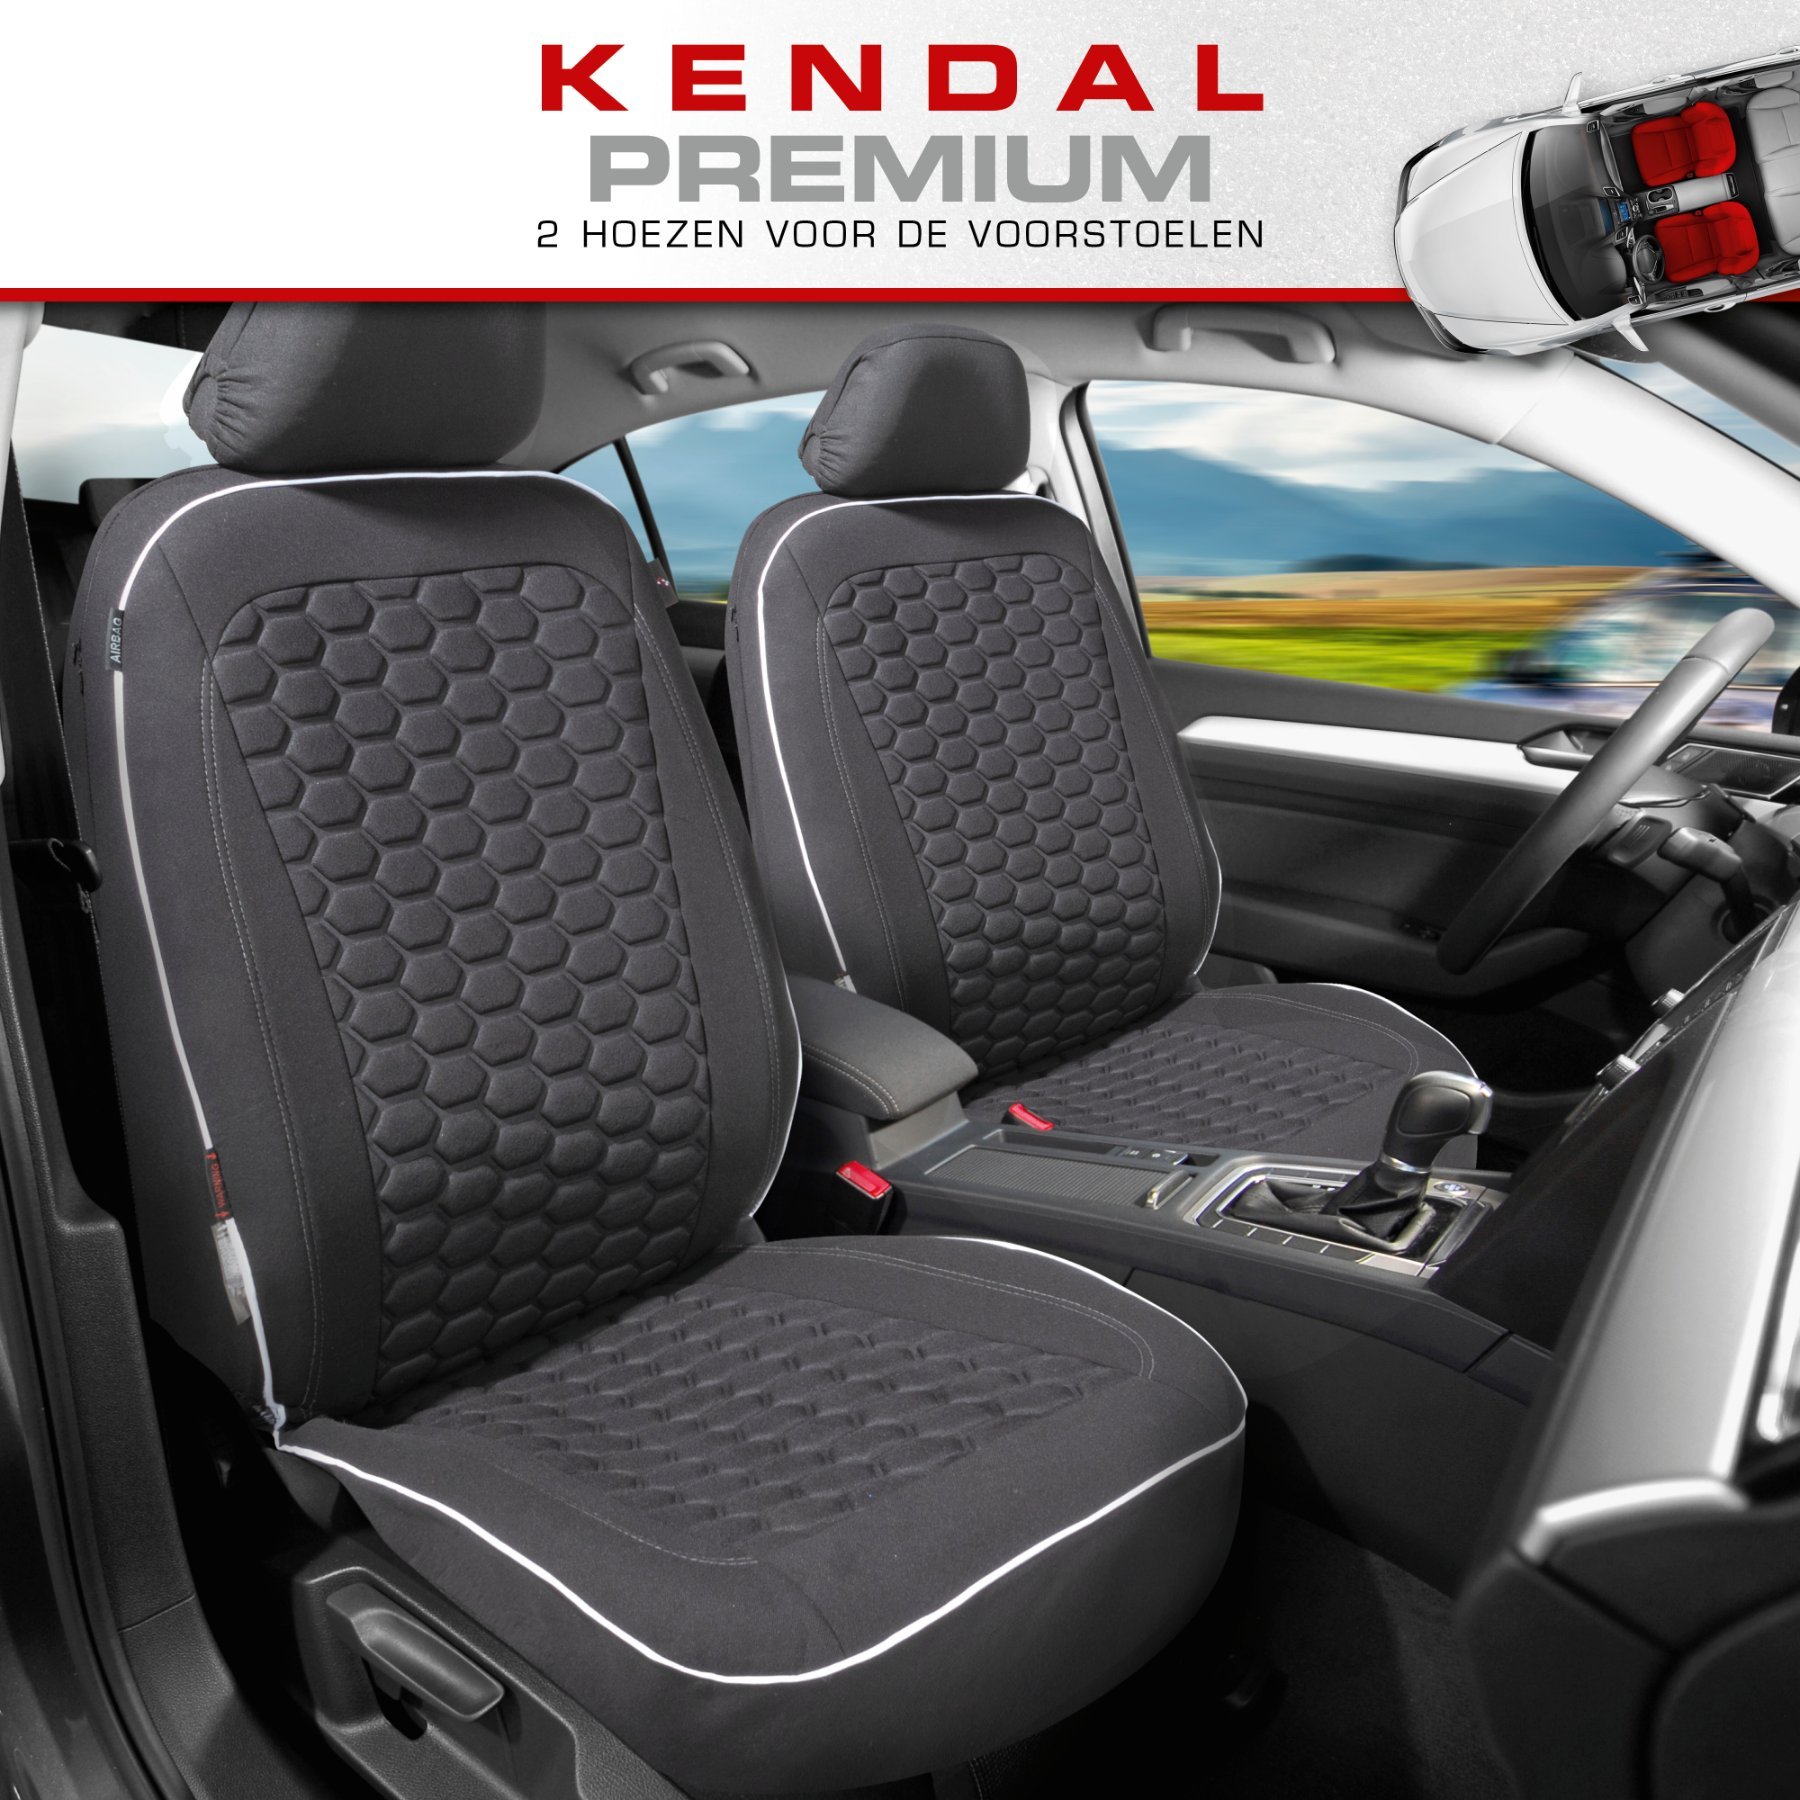 Premium autozetelhoezen Kendal met rits, ZIPP-IT zetelhoezen, 2 voorzetelhoezen zwart/wit 11863